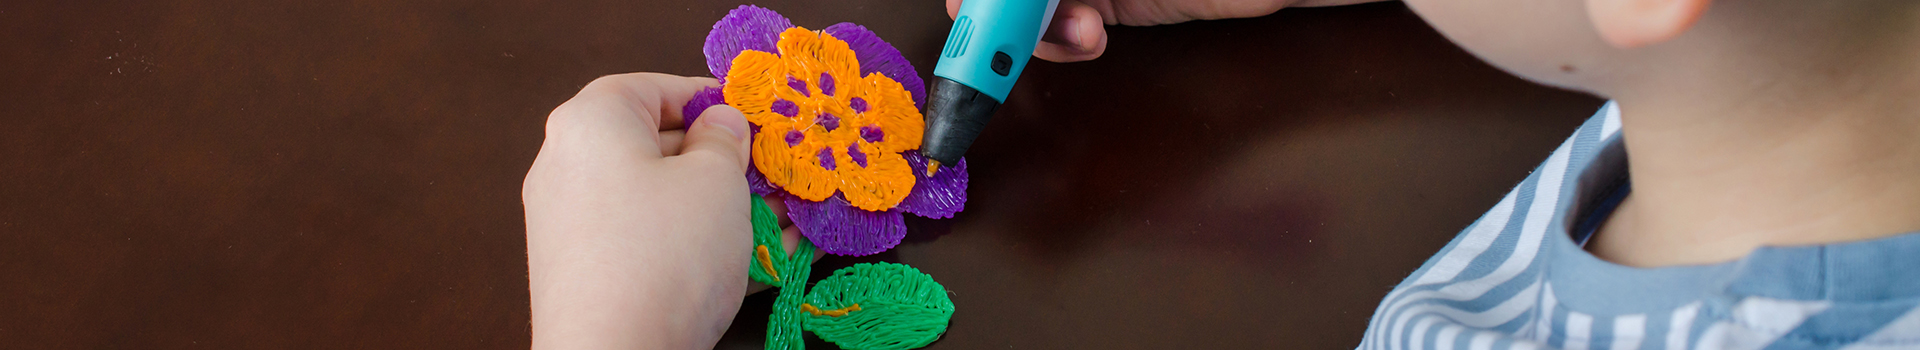 Cậu bé sử dụng bút 3D.Bé vui làm hoa từ nhựa ABS màu.